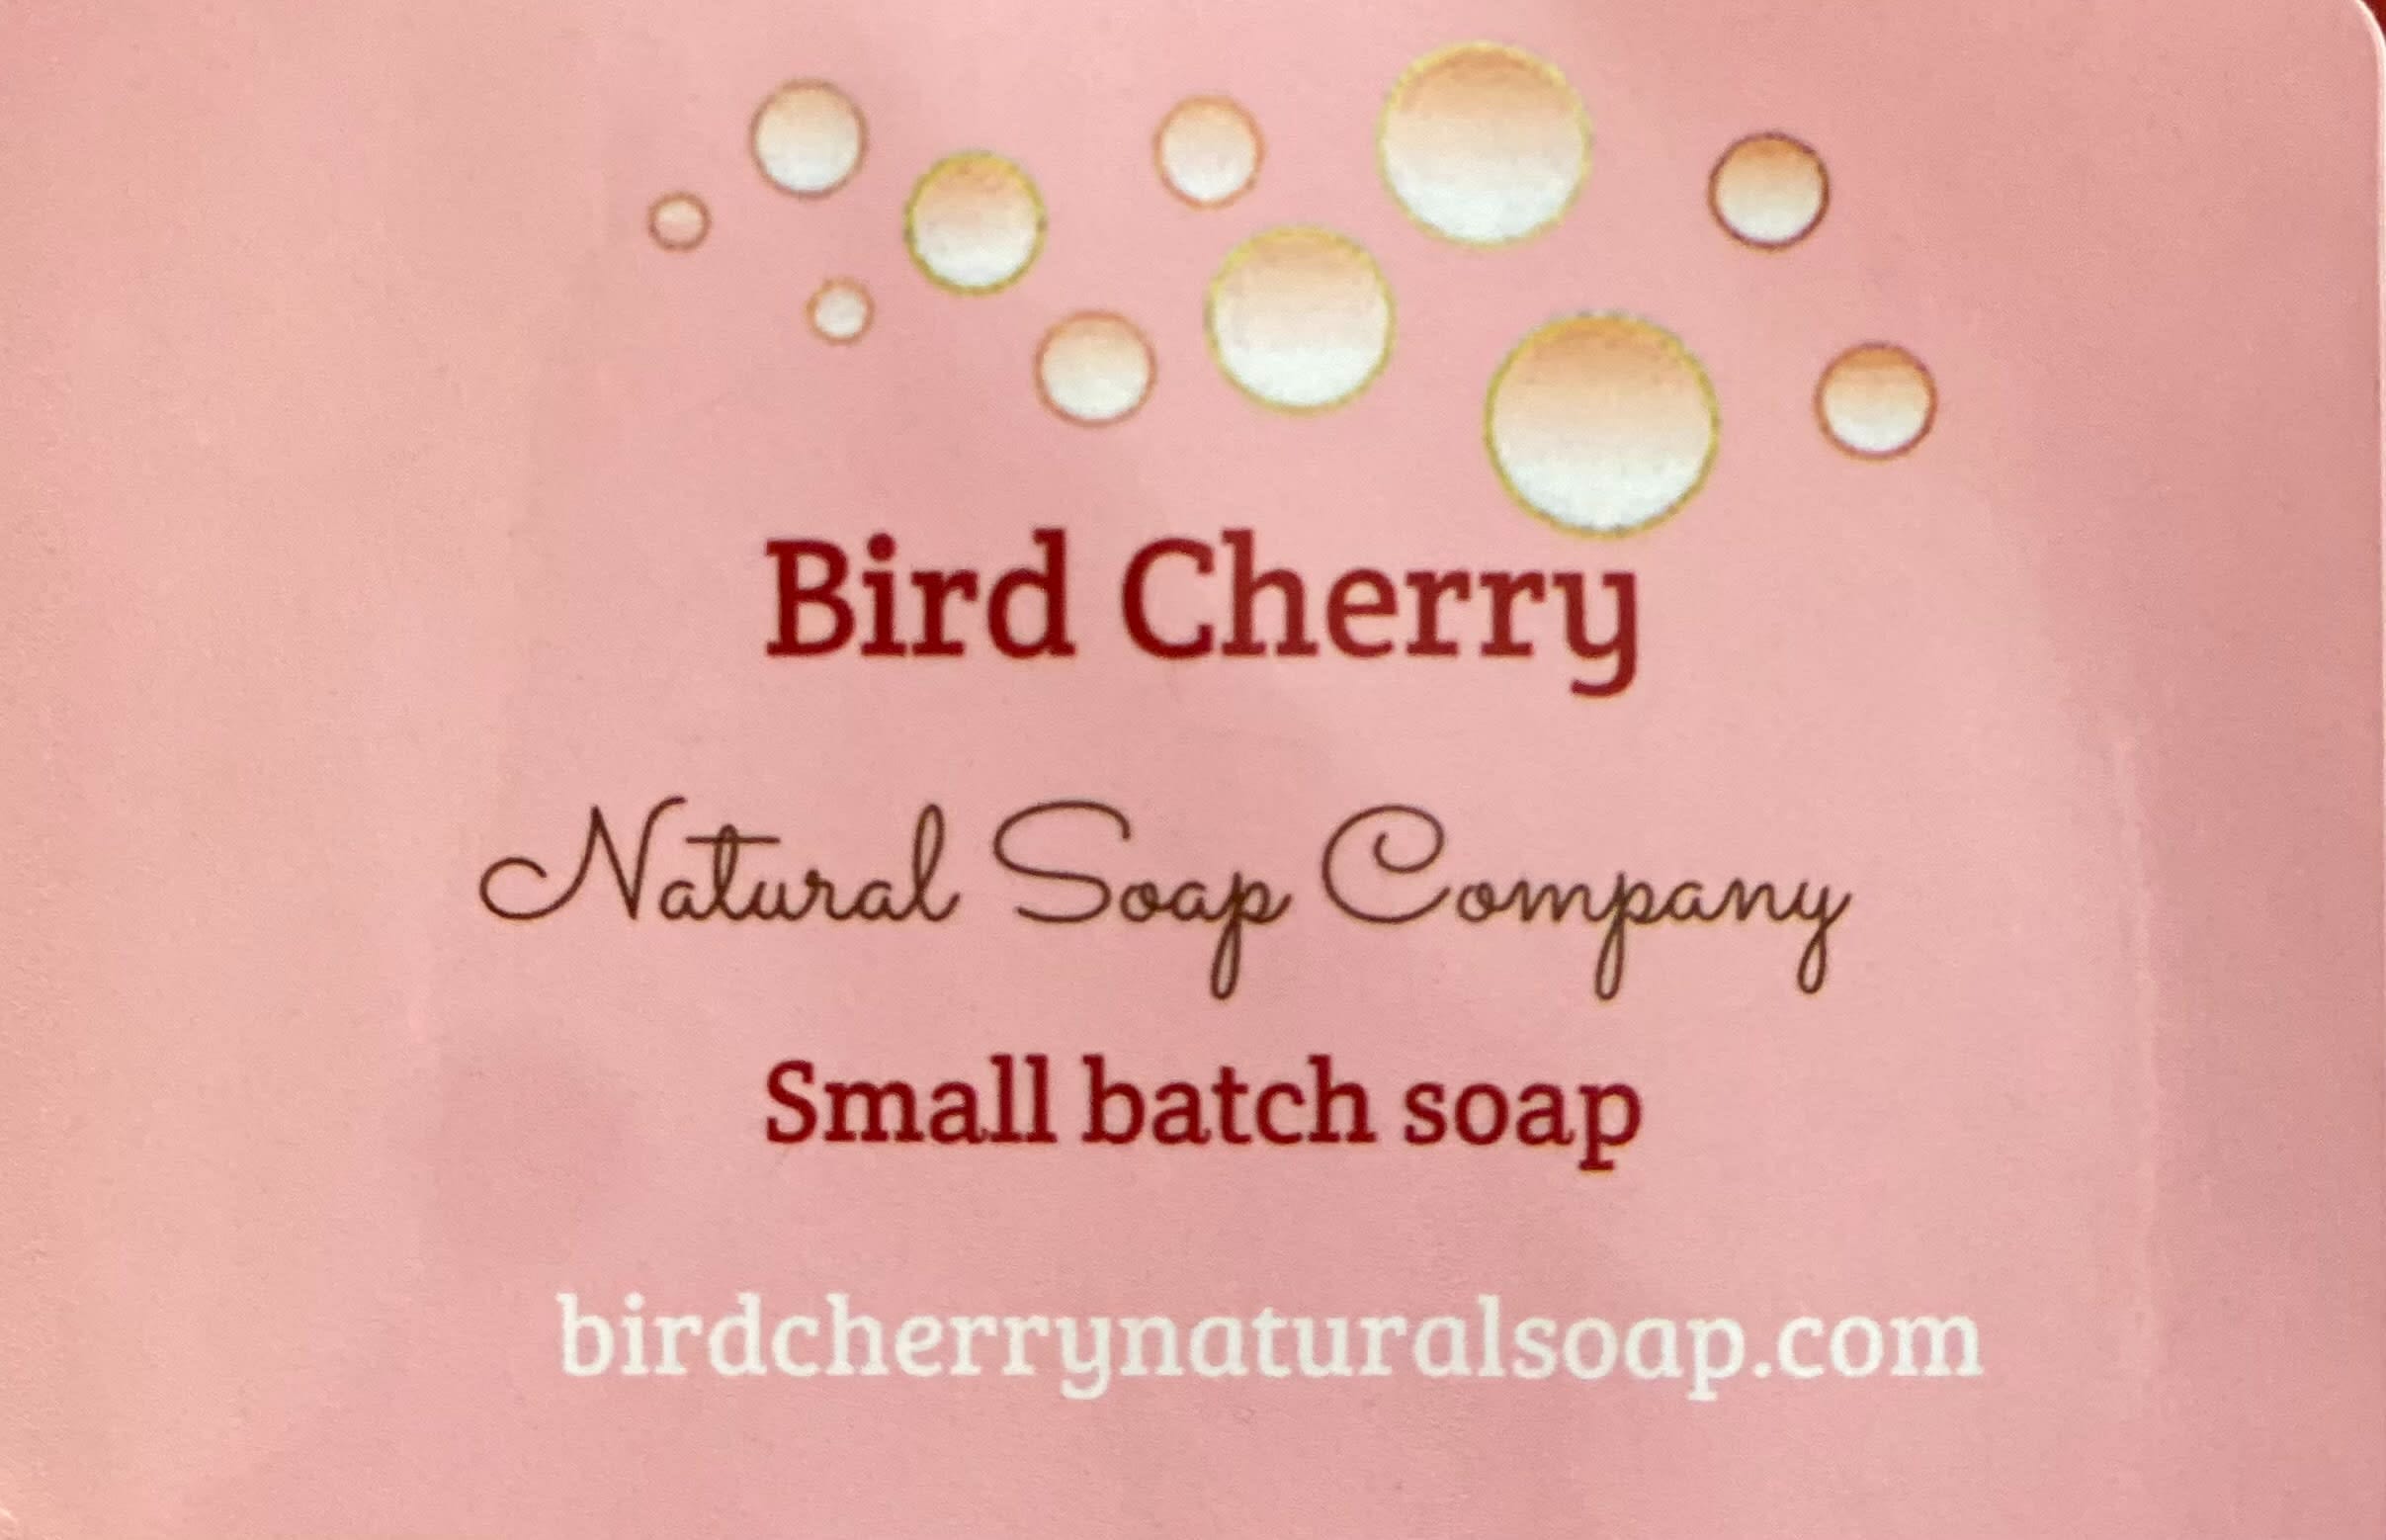 Bird Cherry Natural Soap Company